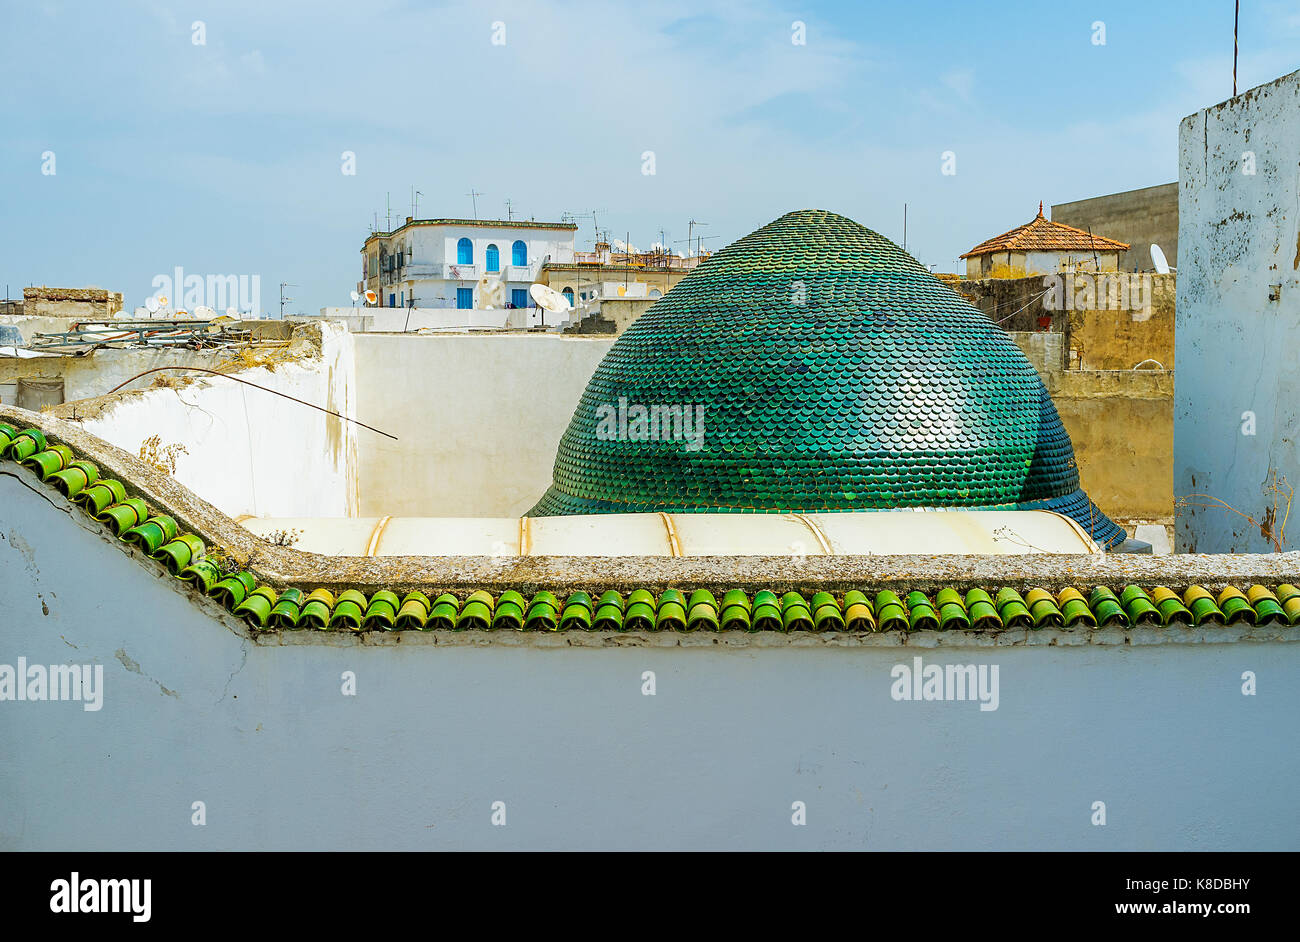 La cupola verde di dar lasram mansion e i tetti della medina di Tunisi sullo sfondo, Tunisia. Foto Stock